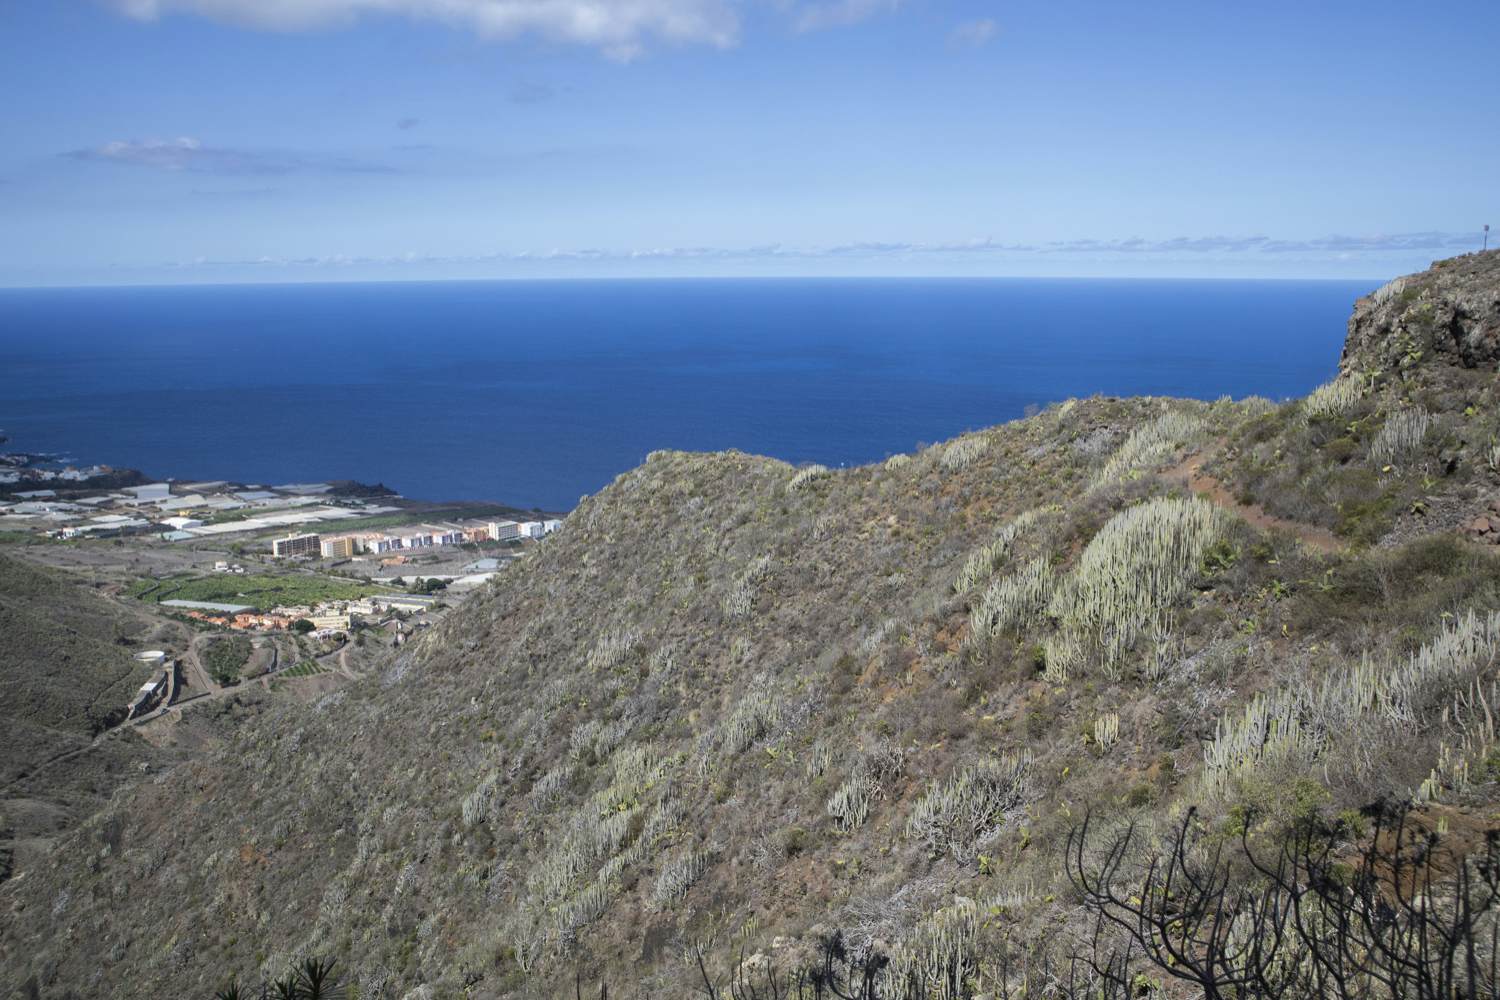 View of Bajamar